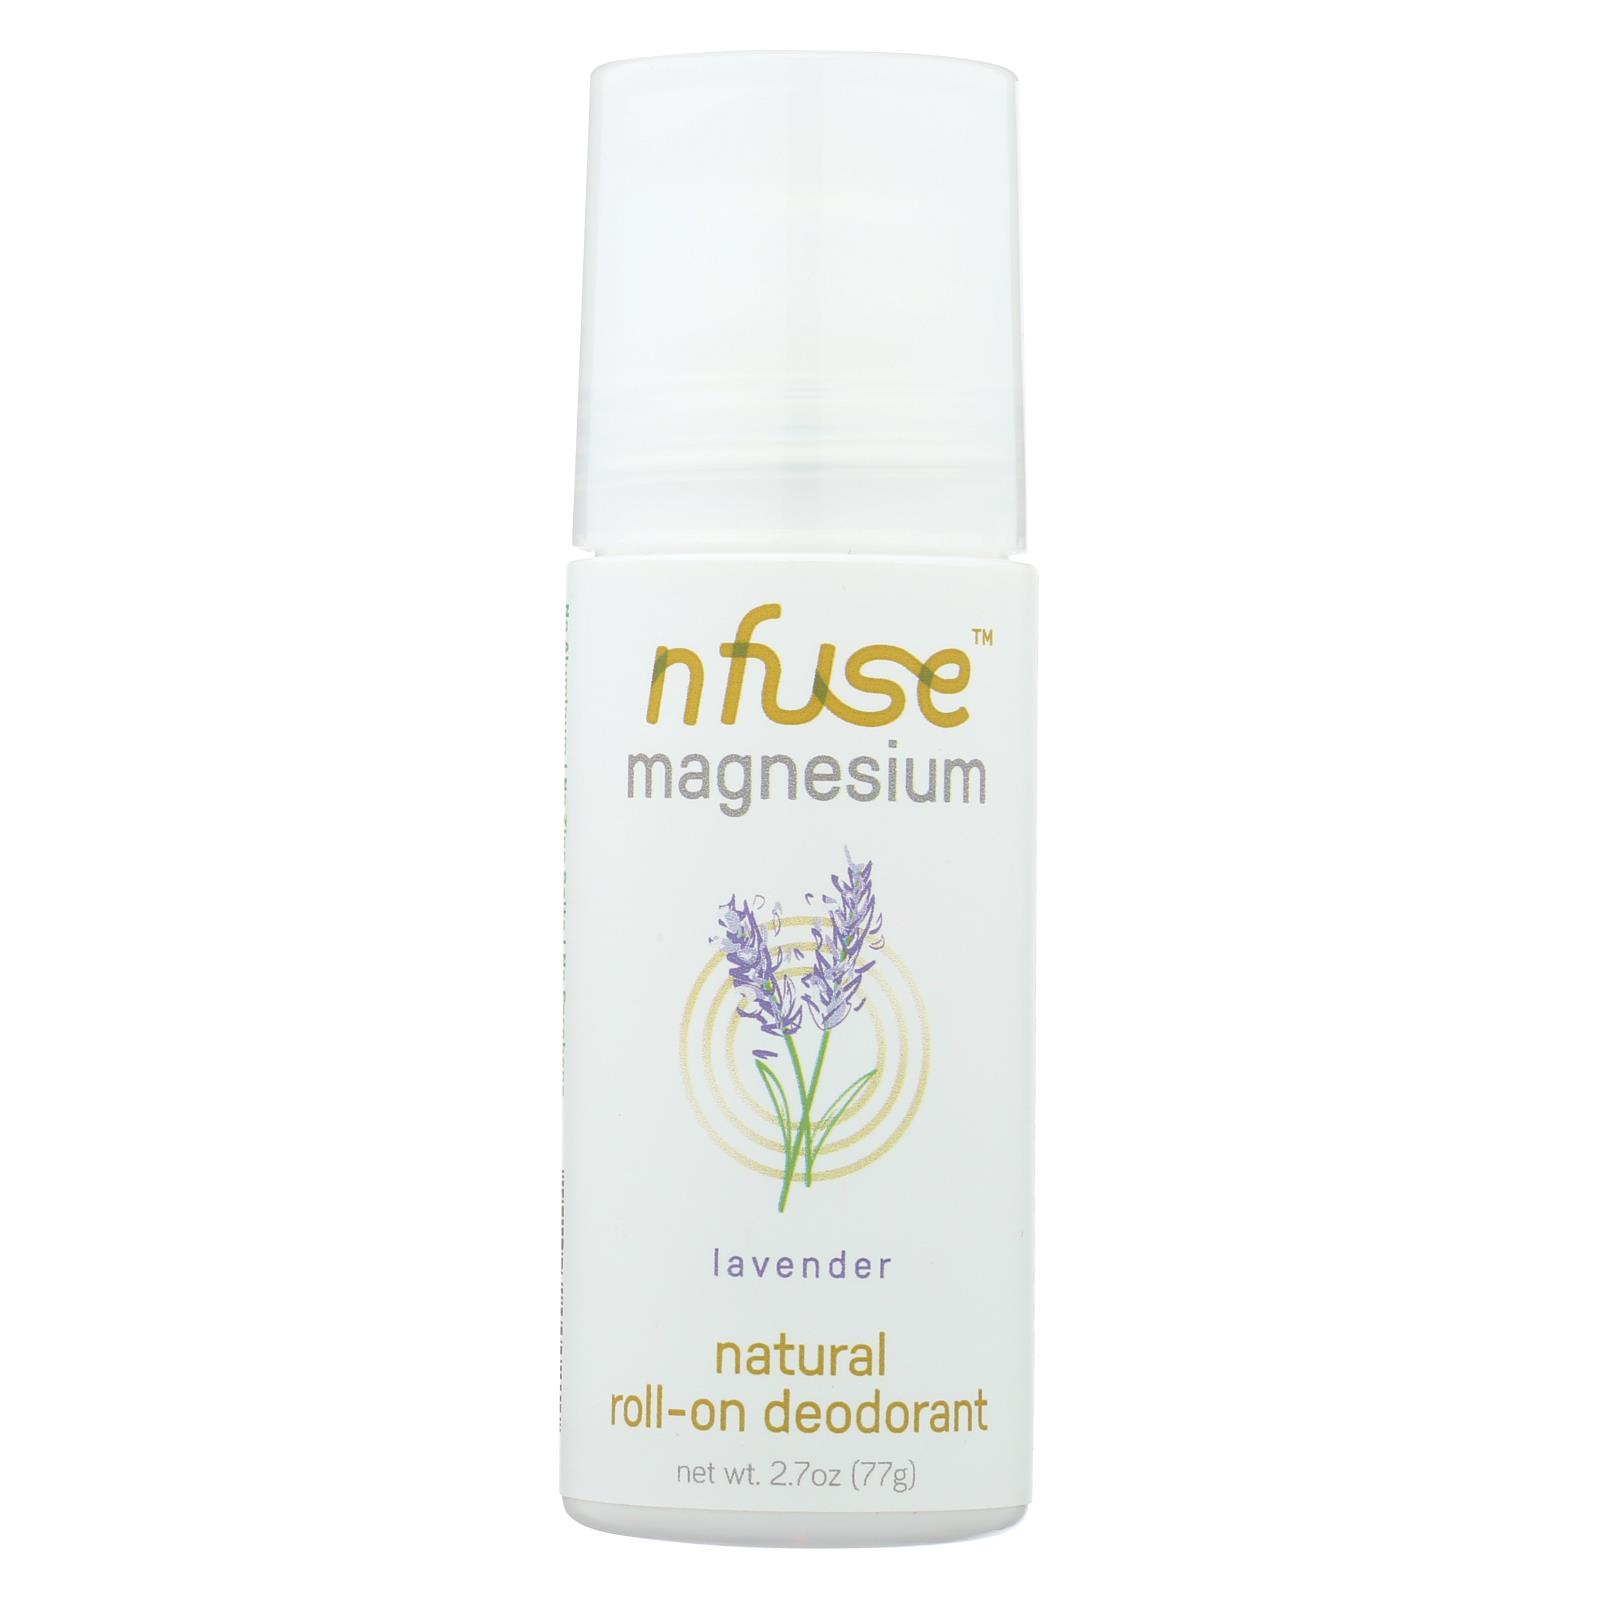 Nfuse - Deodorant Lavender Natural Magnesium - 6개 묶음상품 - 2.7 OZ